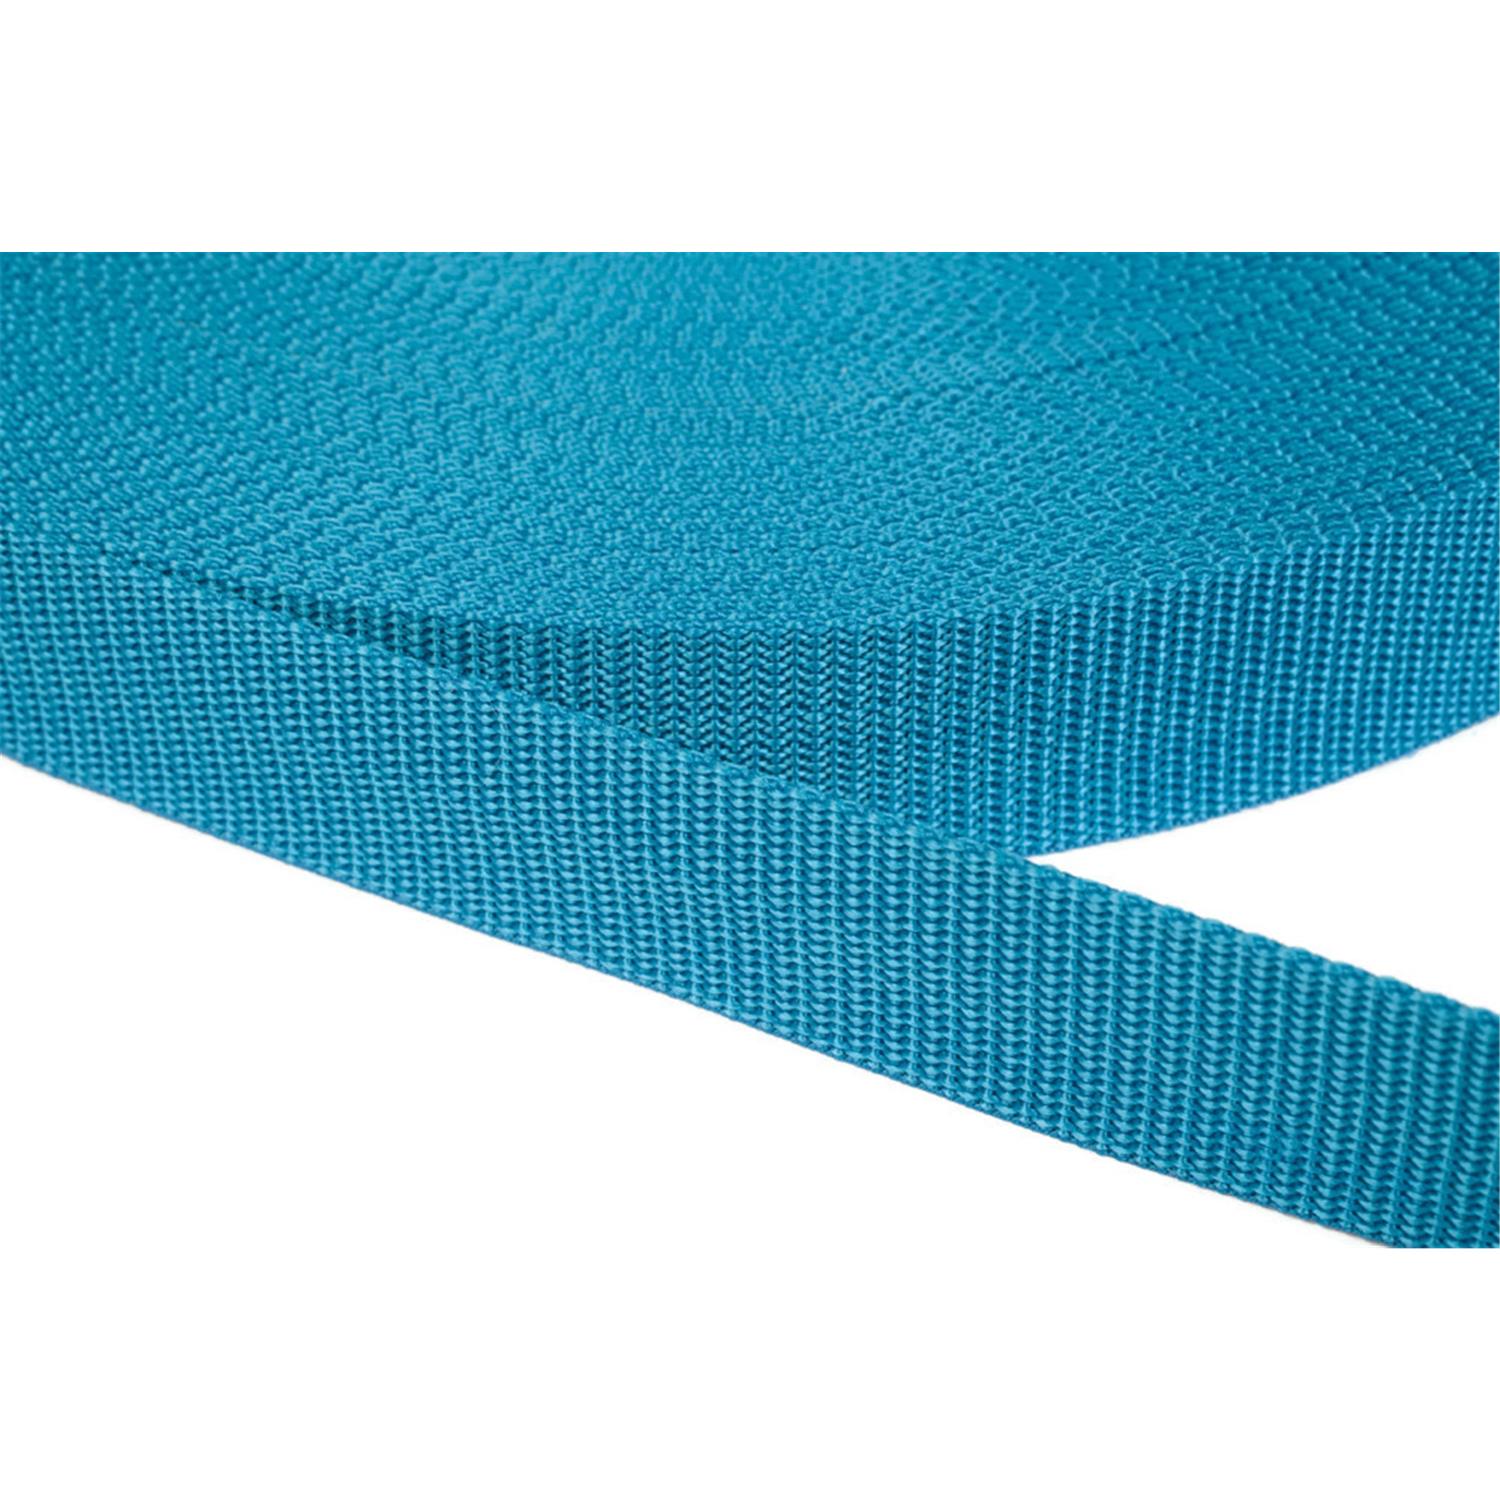 Gurtband 20mm breit aus Polypropylen in 41 Farben 29 - türkis 06 Meter